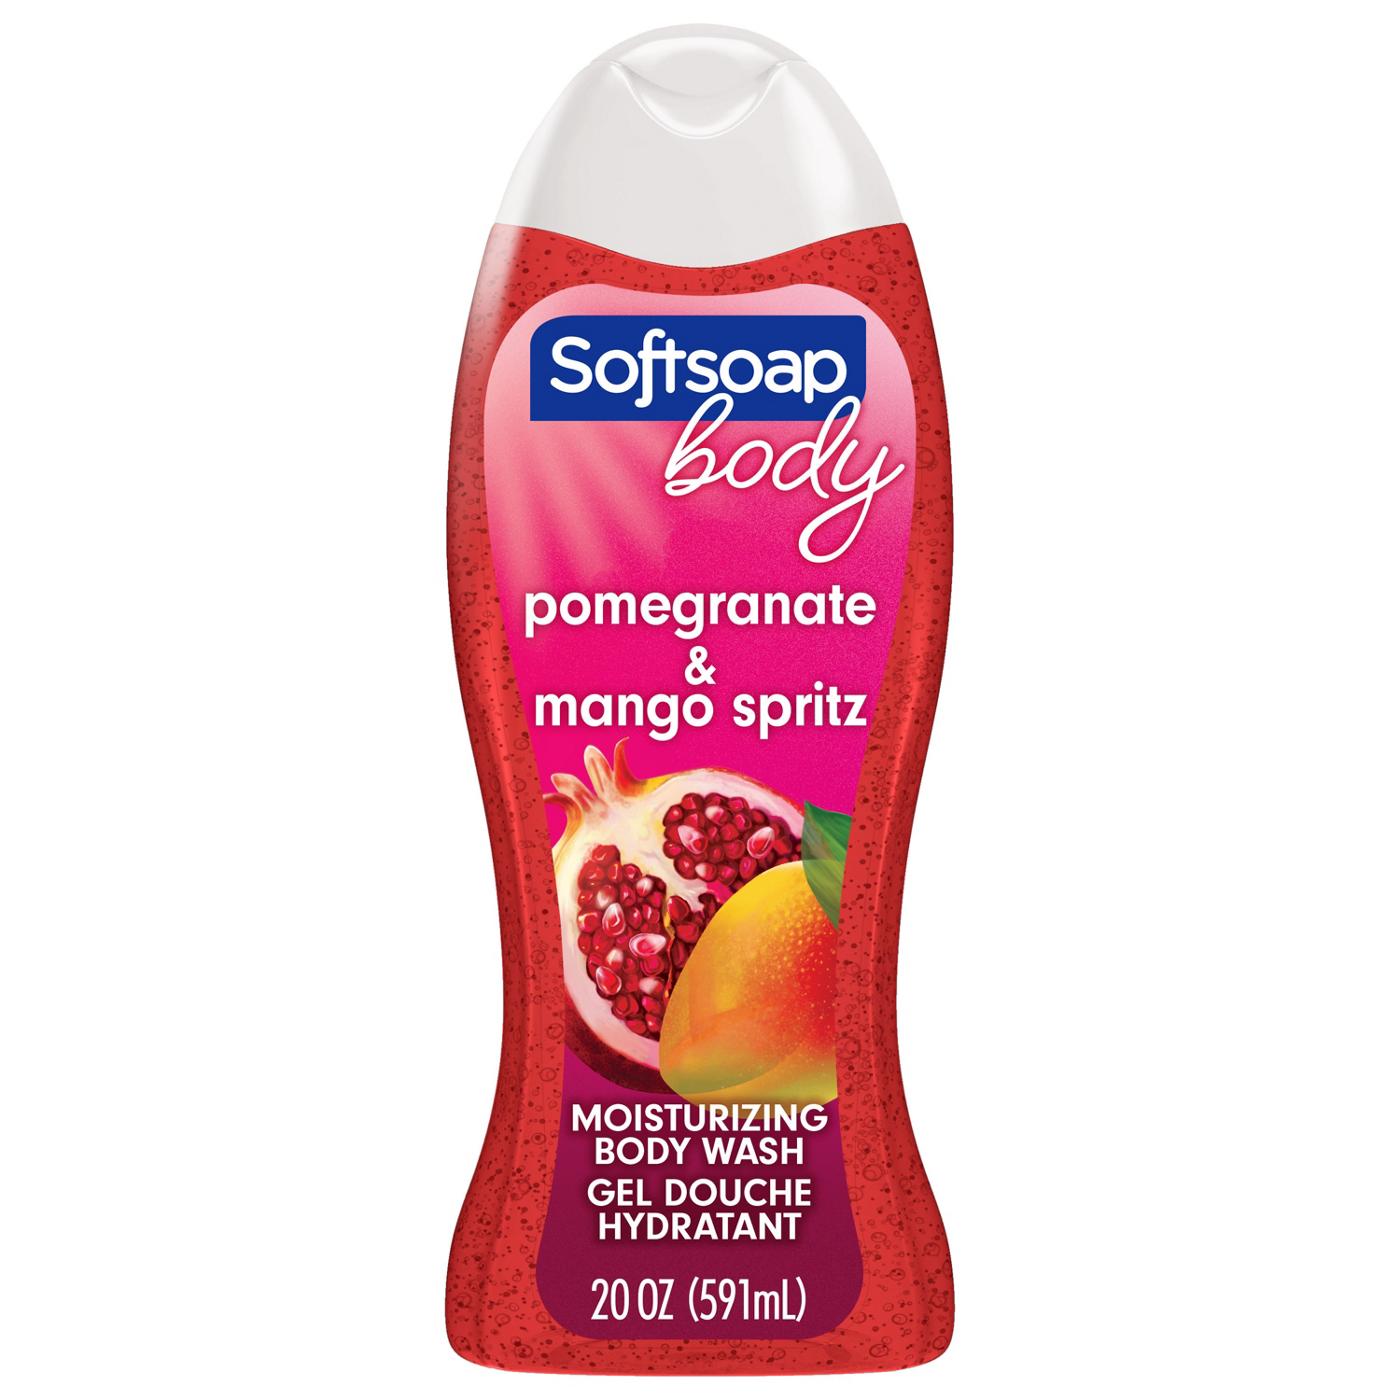 Softsoap Body Wash - Pomegranate & Mango Spritz; image 7 of 11